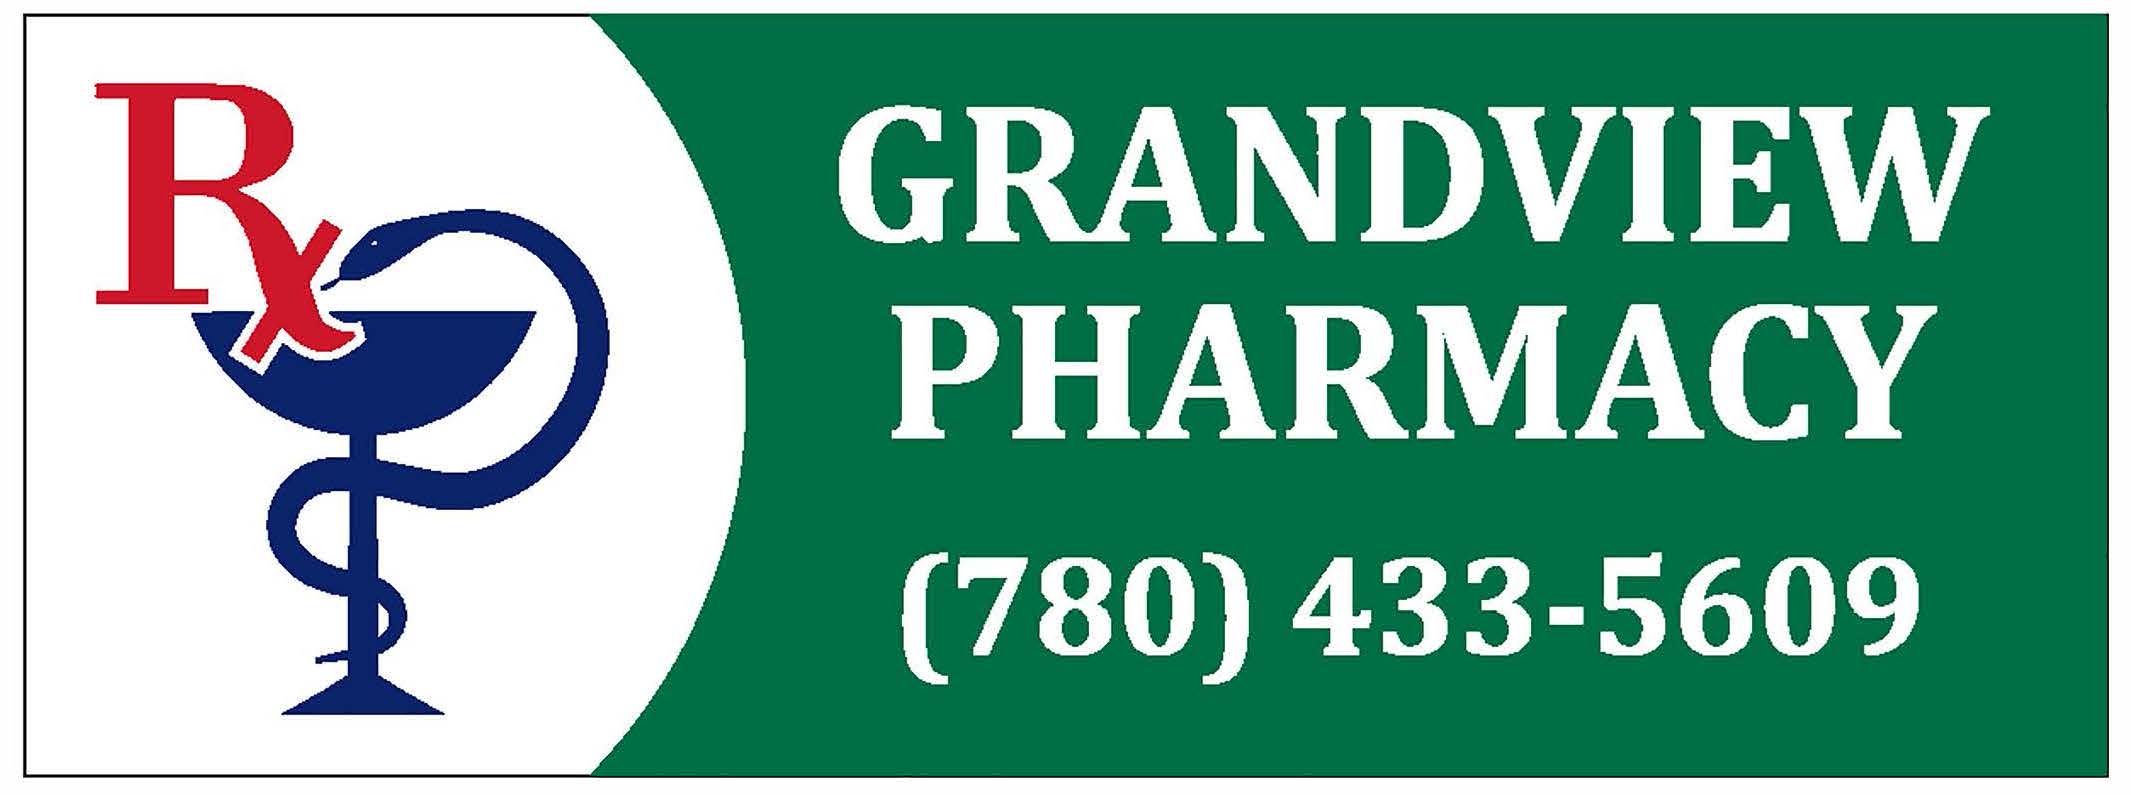 Grand View Pharmacy Edmonton